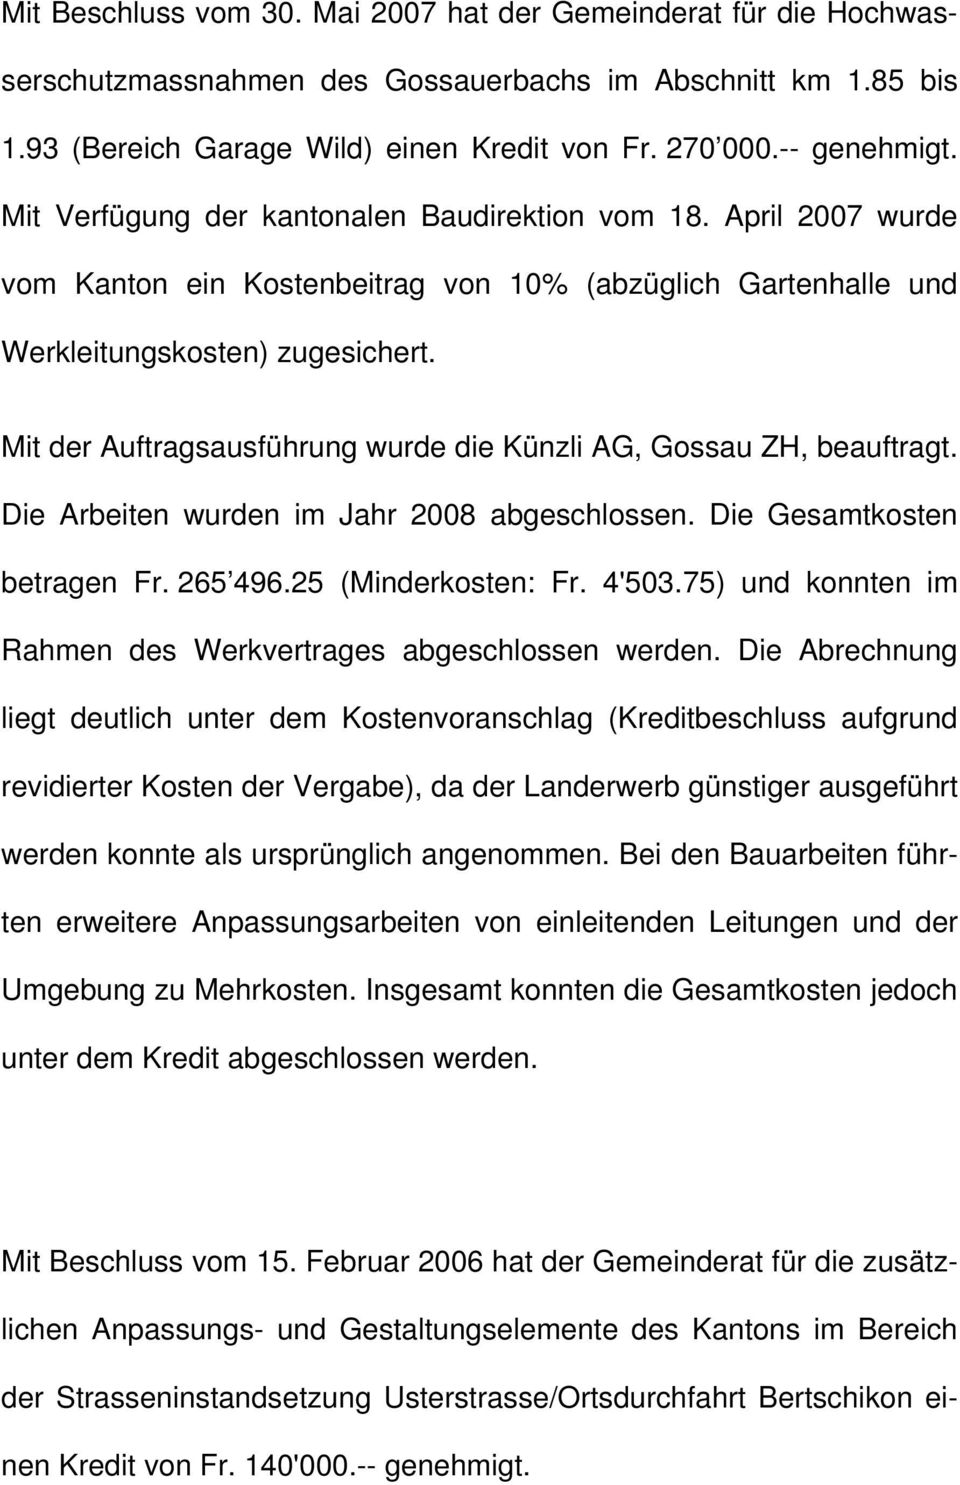 Mit der Auftragsausführung wurde die Künzli AG, Gossau ZH, beauftragt. Die Arbeiten wurden im Jahr 2008 abgeschlossen. Die Gesamtkosten betragen Fr. 265 496.25 (Minderkosten: Fr. 4'503.